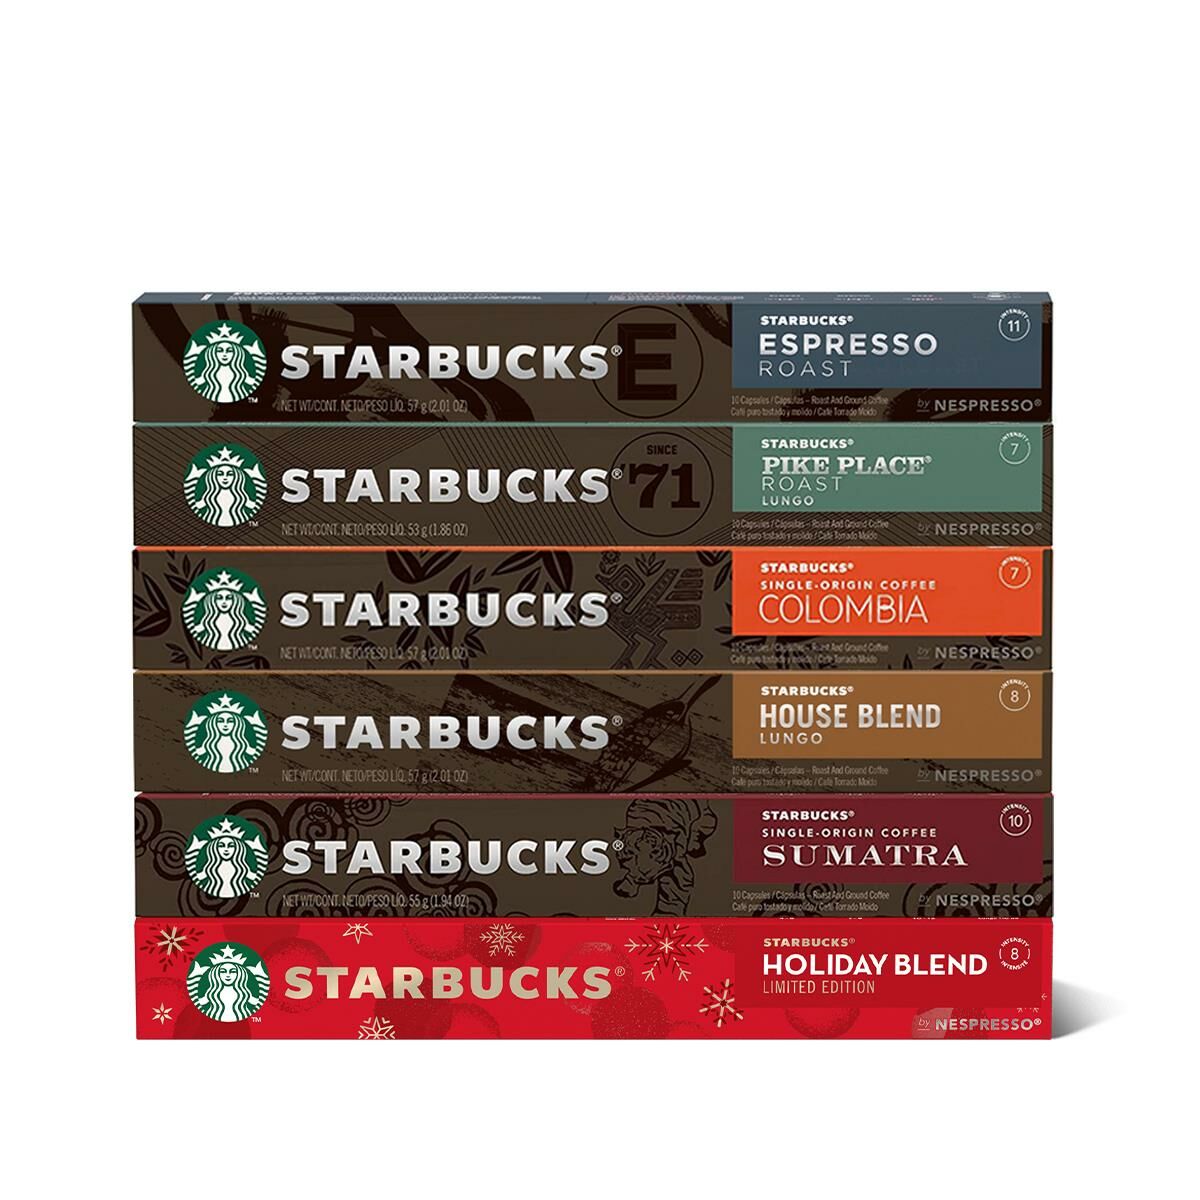 Starbucks Kapsül Kahve Paketi 6' lı